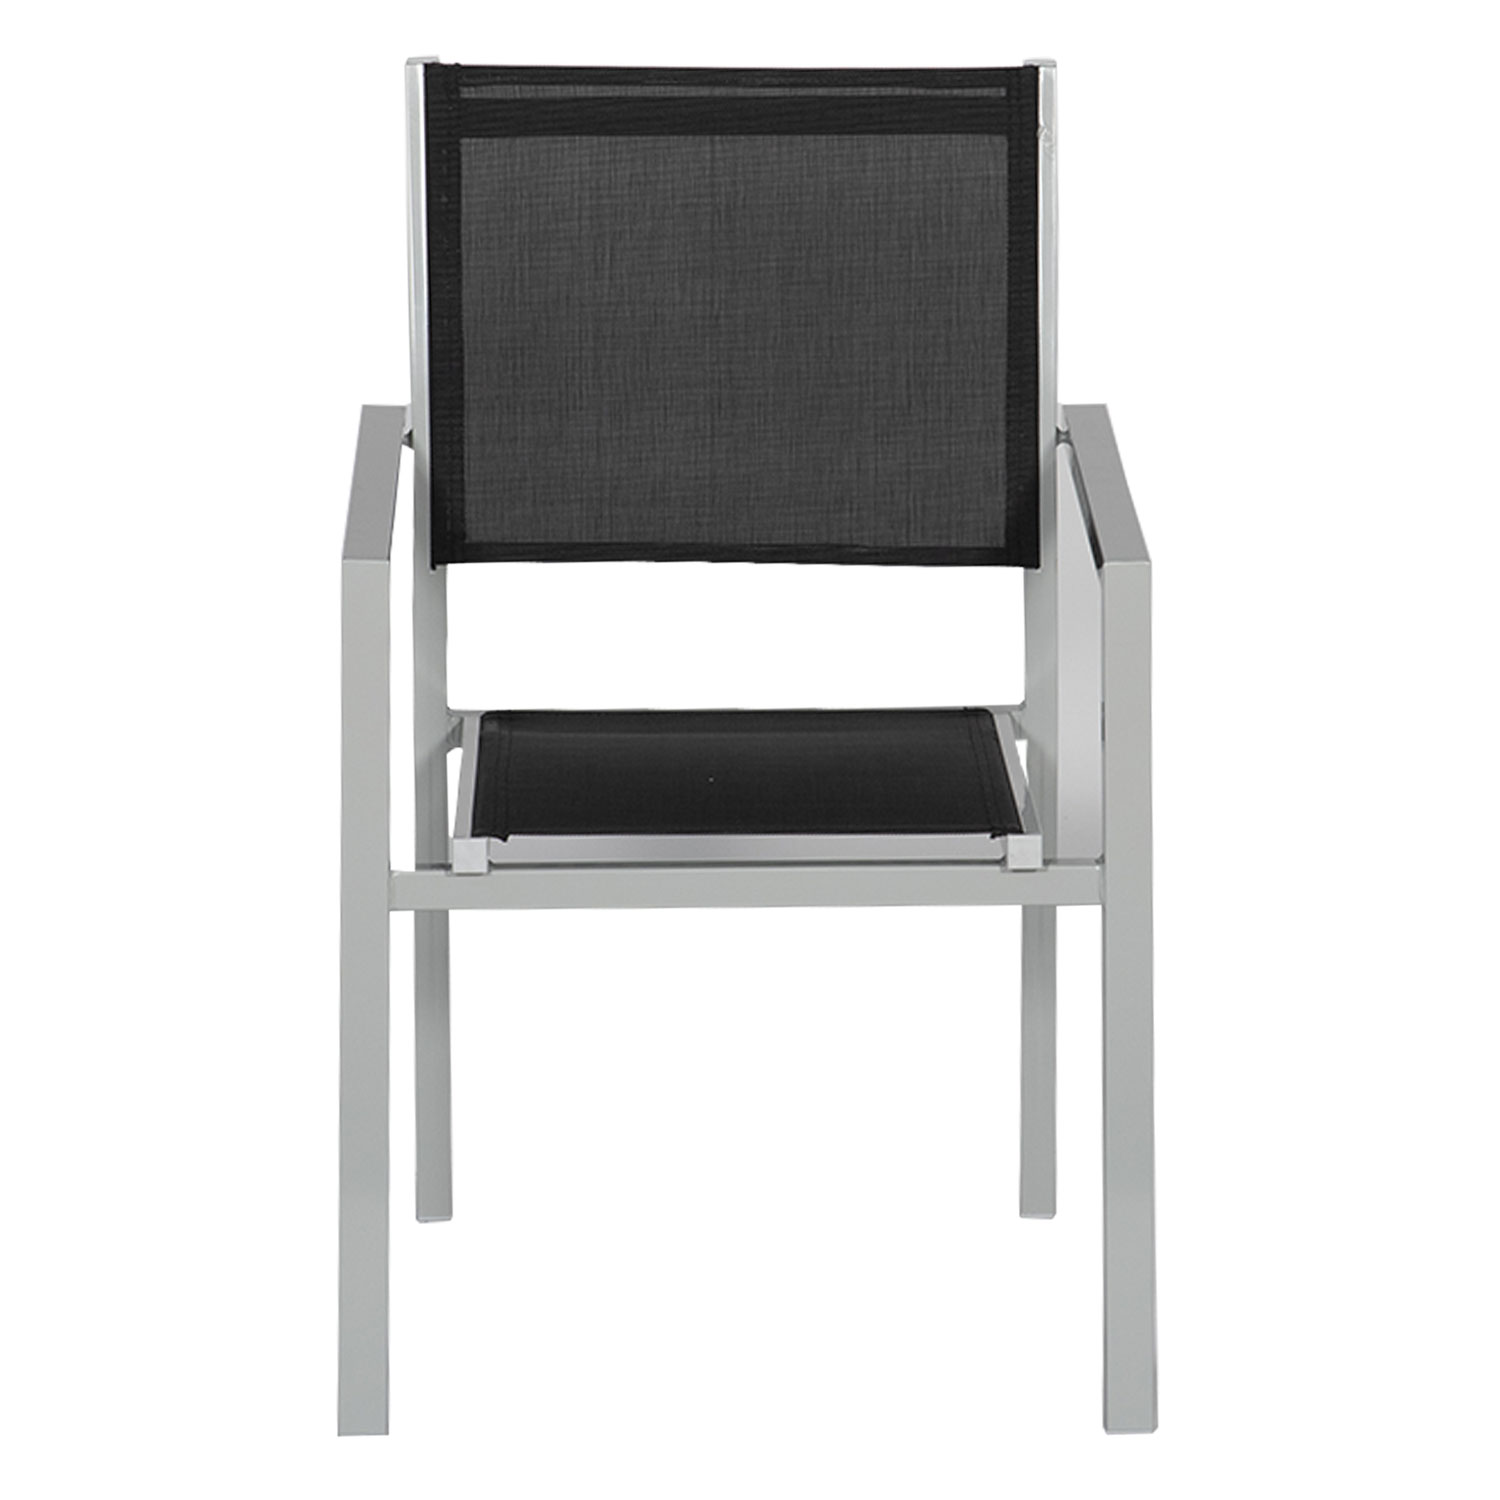 Satz von 10 Stühlen aus grauem Aluminium - schwarzes Textilene